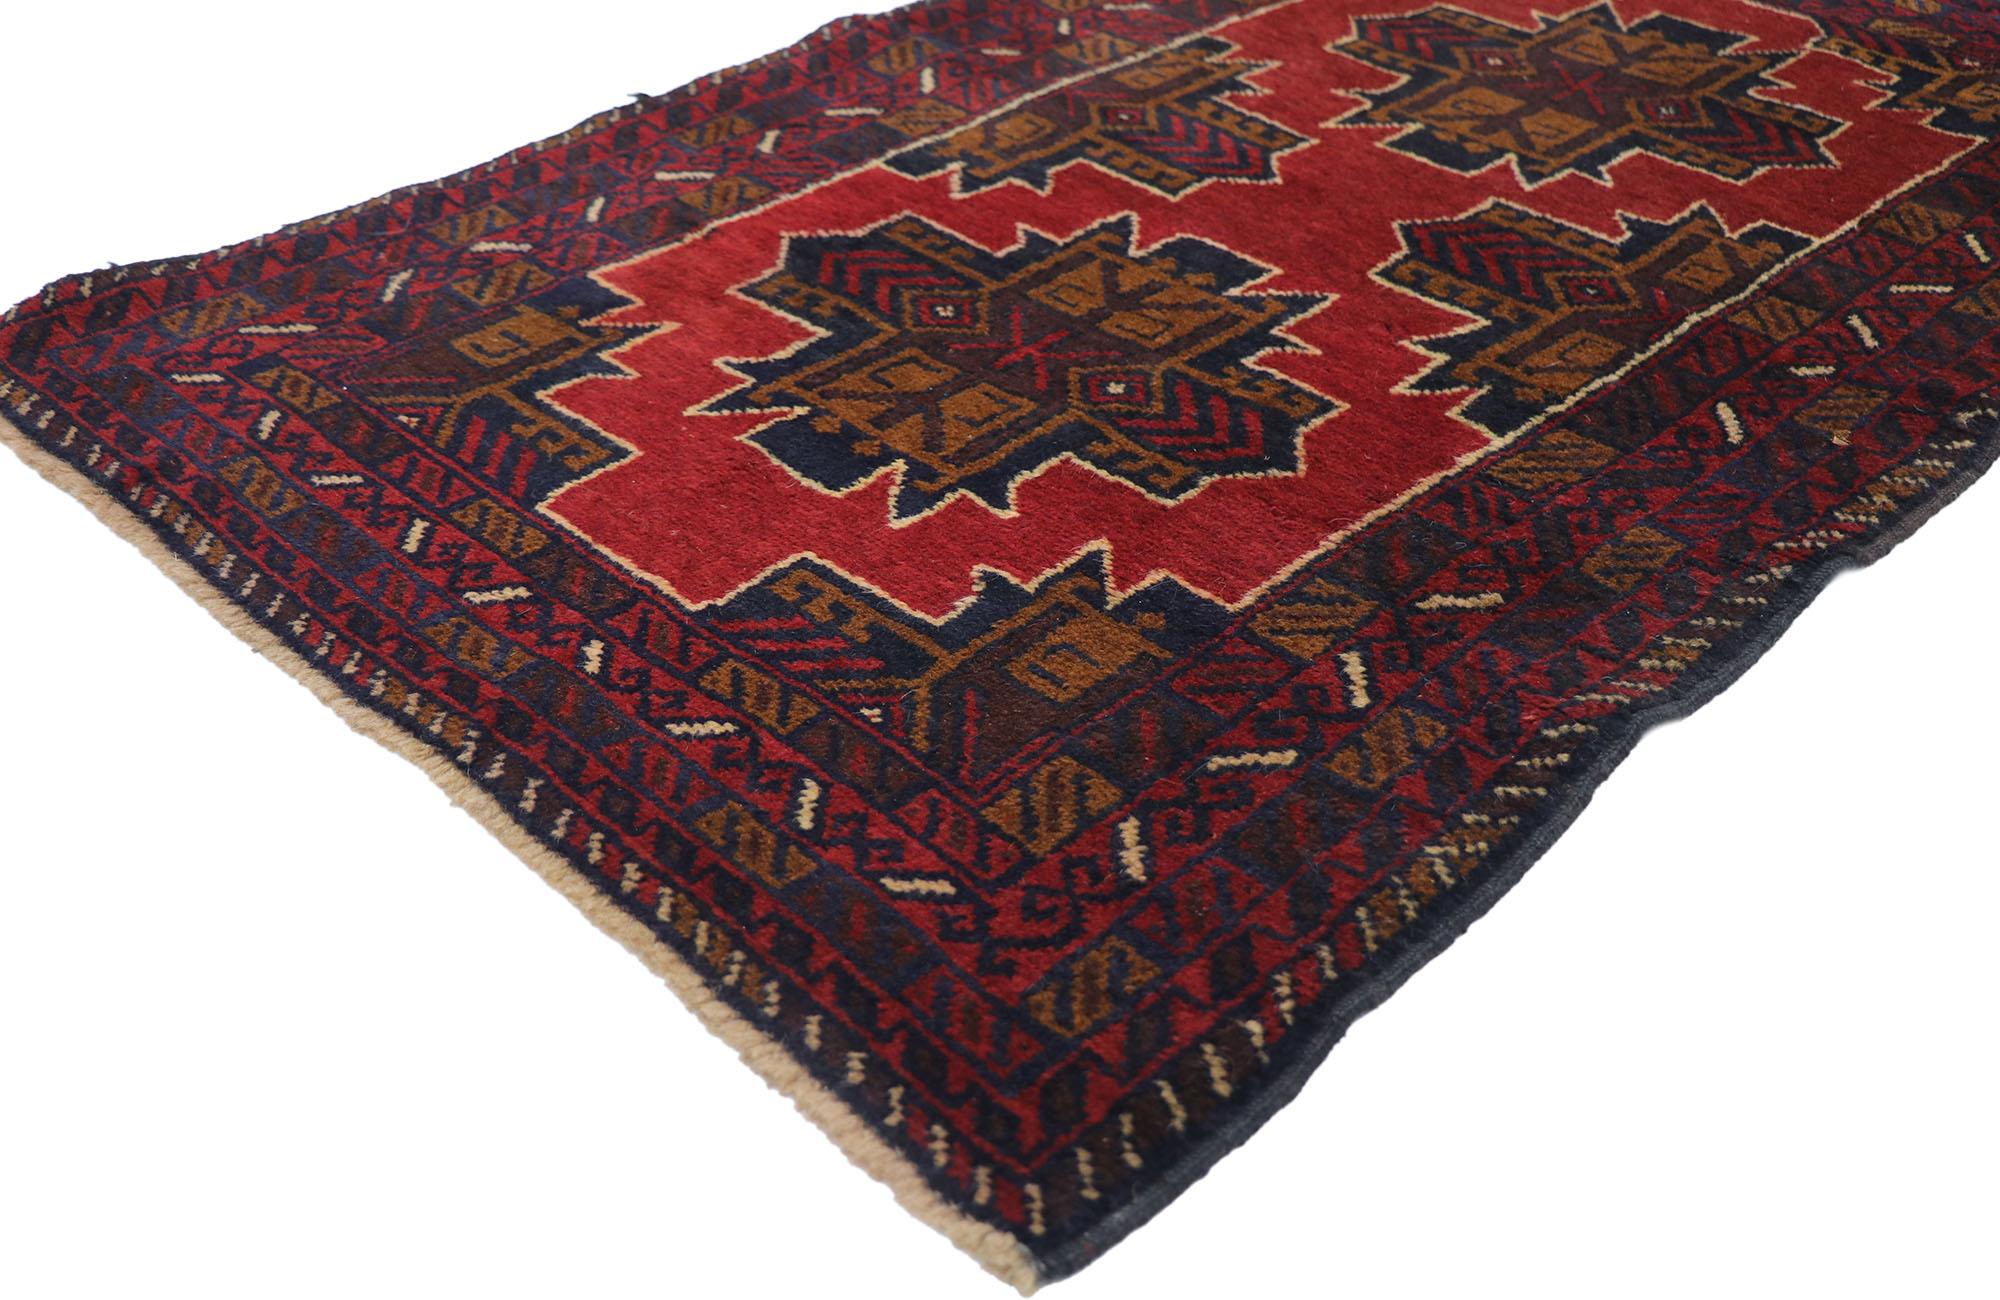 78089 Vintage Persisch Baluch Teppich mit Mid-Century Modern Stil 02'10 x 04'05. Warm und einladend mit einem kühnen, ausdrucksstarken Design und einem Stammesstil ist dieser handgeknüpfte persische Belutsch-Teppich aus Wolle eine fesselnde Vision